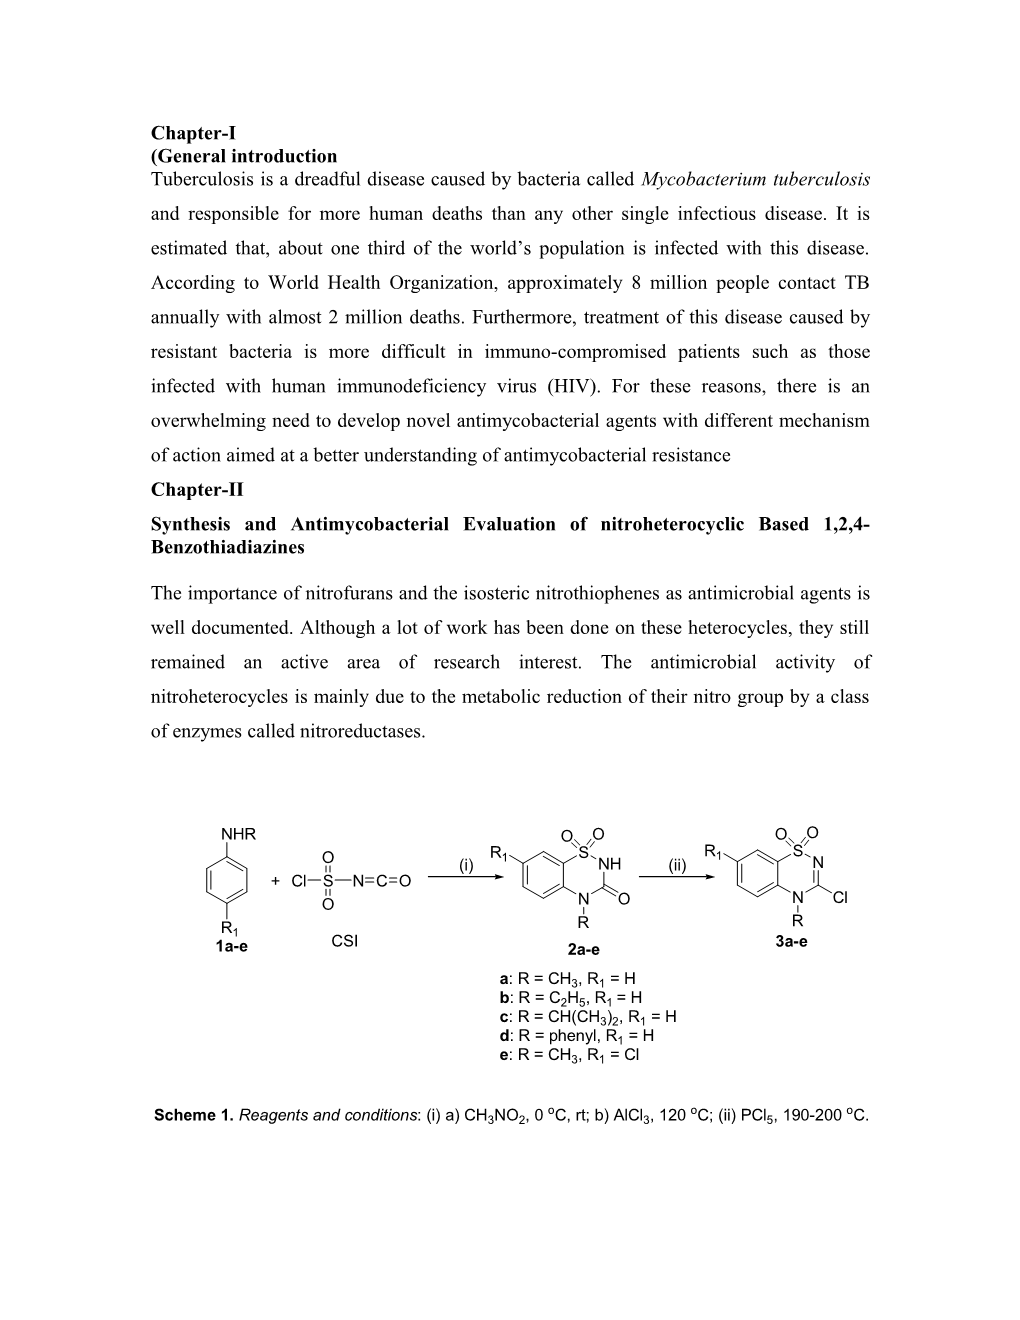 Synthesis and Antimycobacterial Evaluation of Nitroheterocyclic Based 1,2,4-Benzothiadiazines